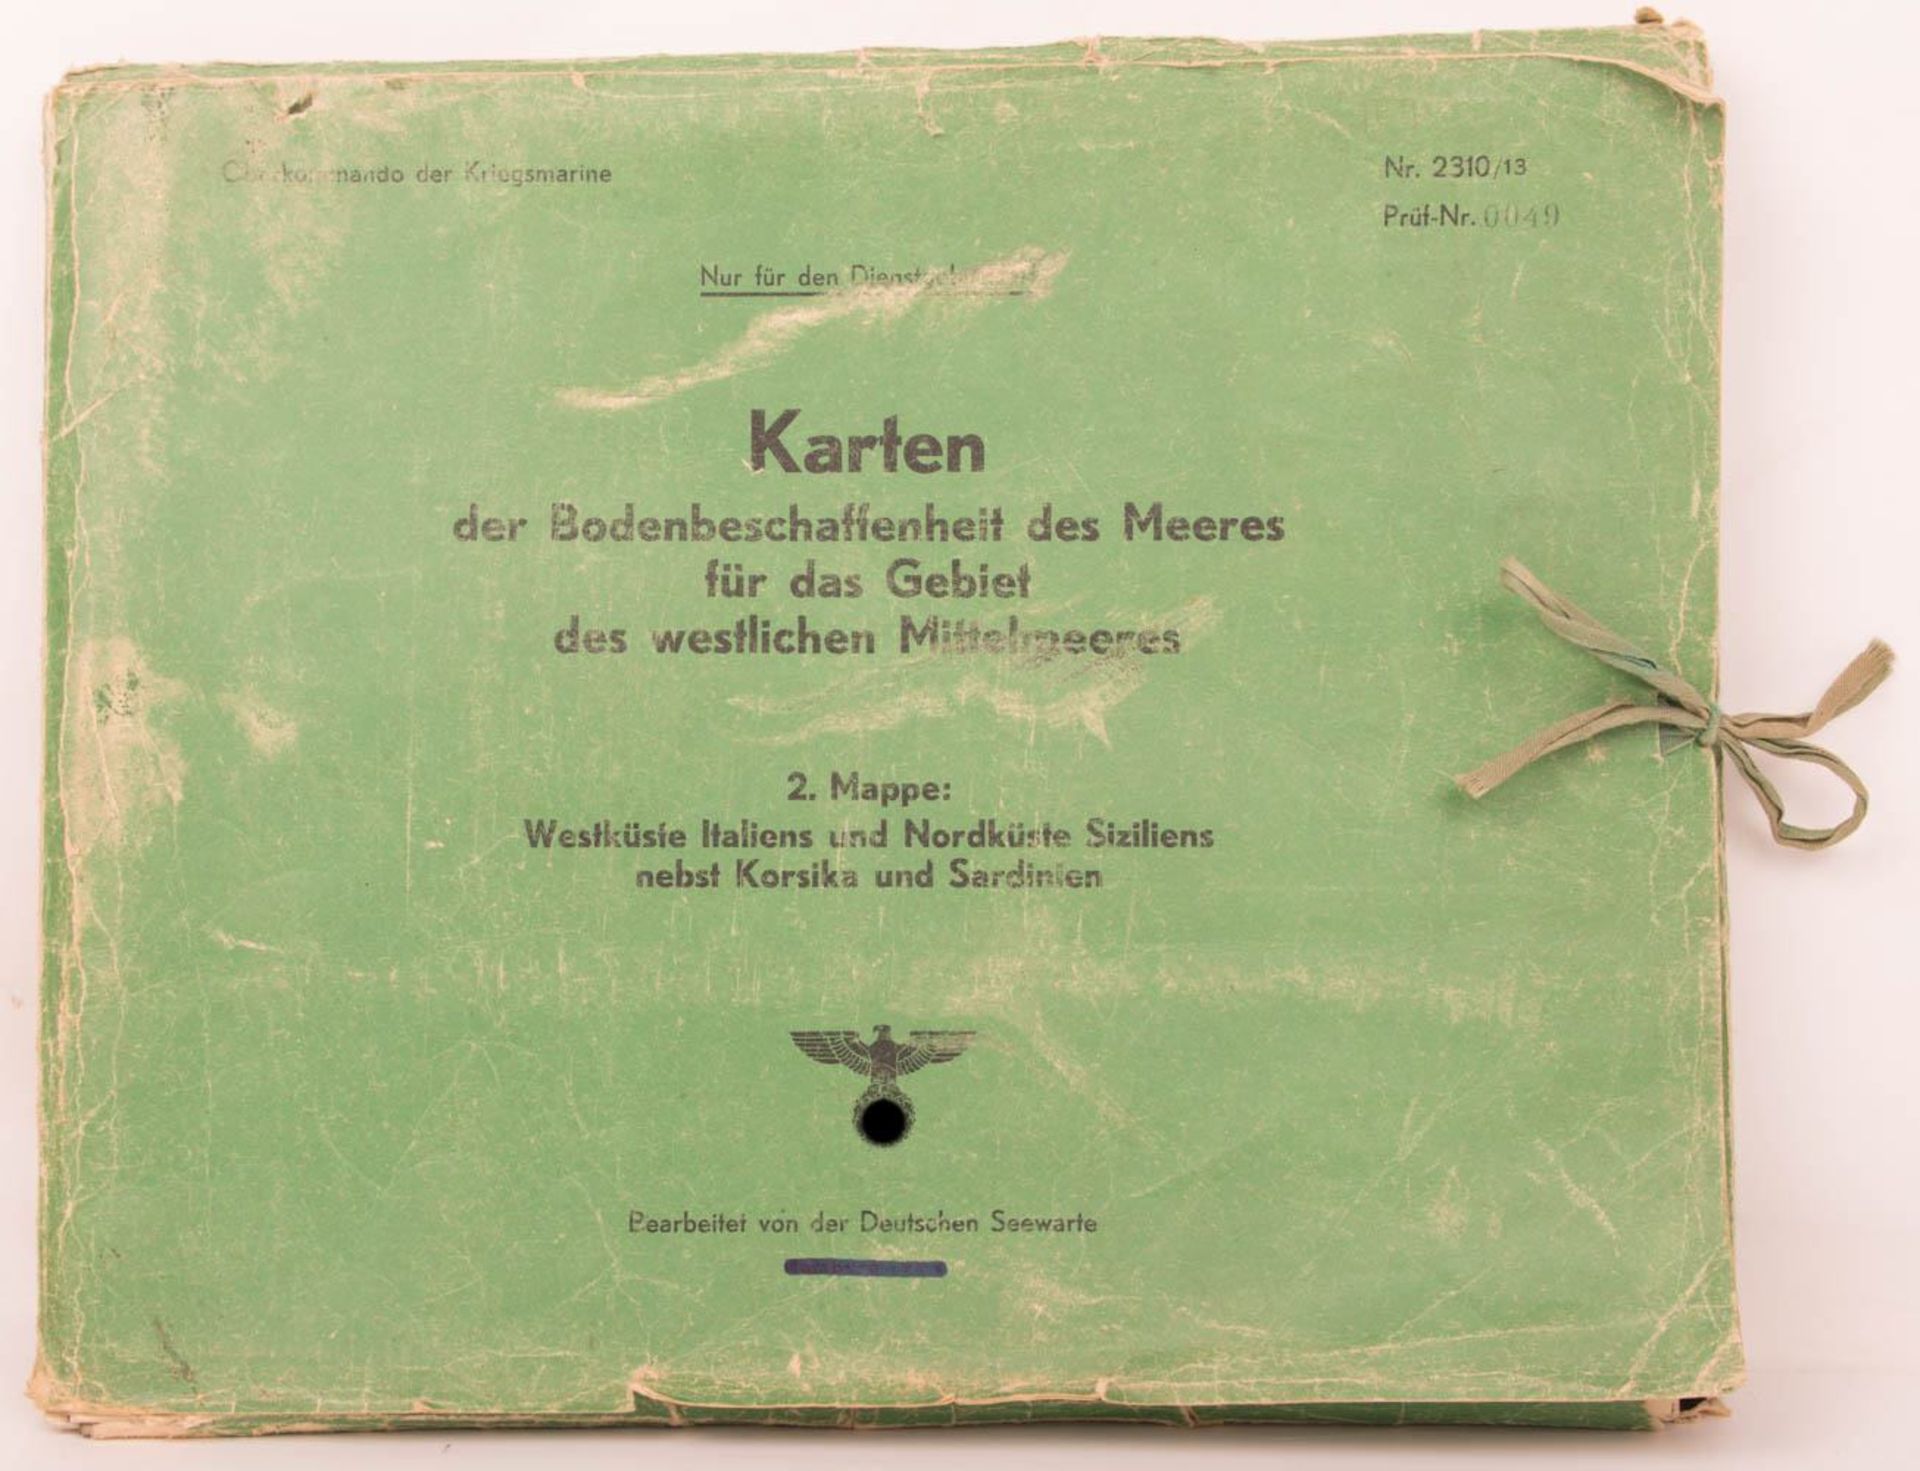 Kartensammlung des Mittelmeers, Oberkommando der Kriegsmarine, 20. Jhd.